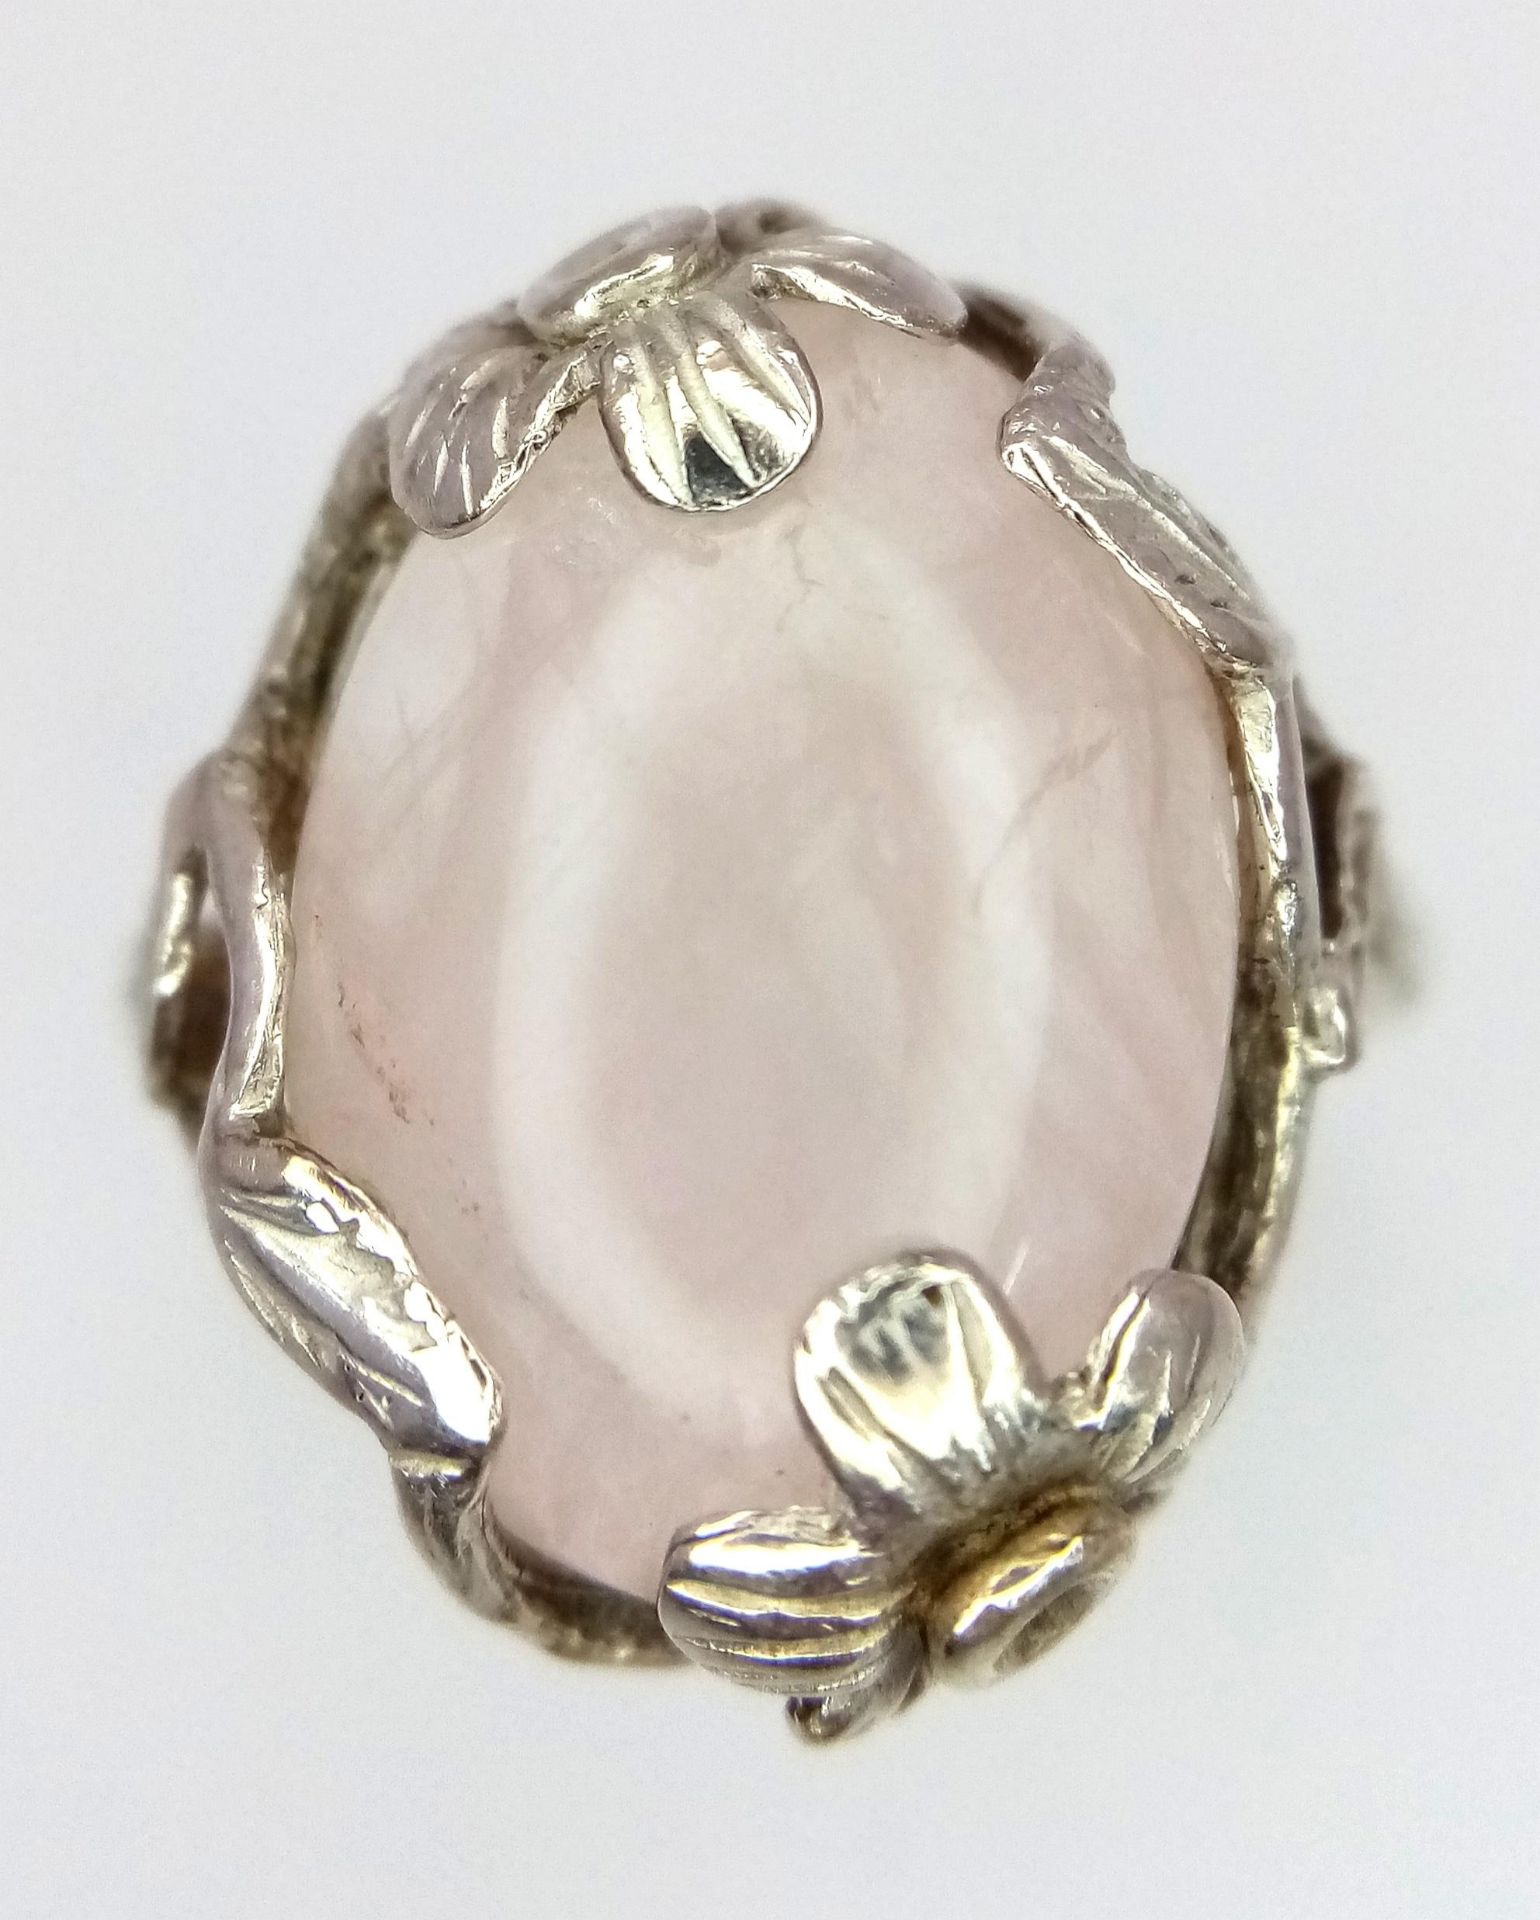 A Vintage, Ornate Flower Design Mounted, Rose Quartz Cabochon Sterling Silver Ring Size R. Set - Image 2 of 5